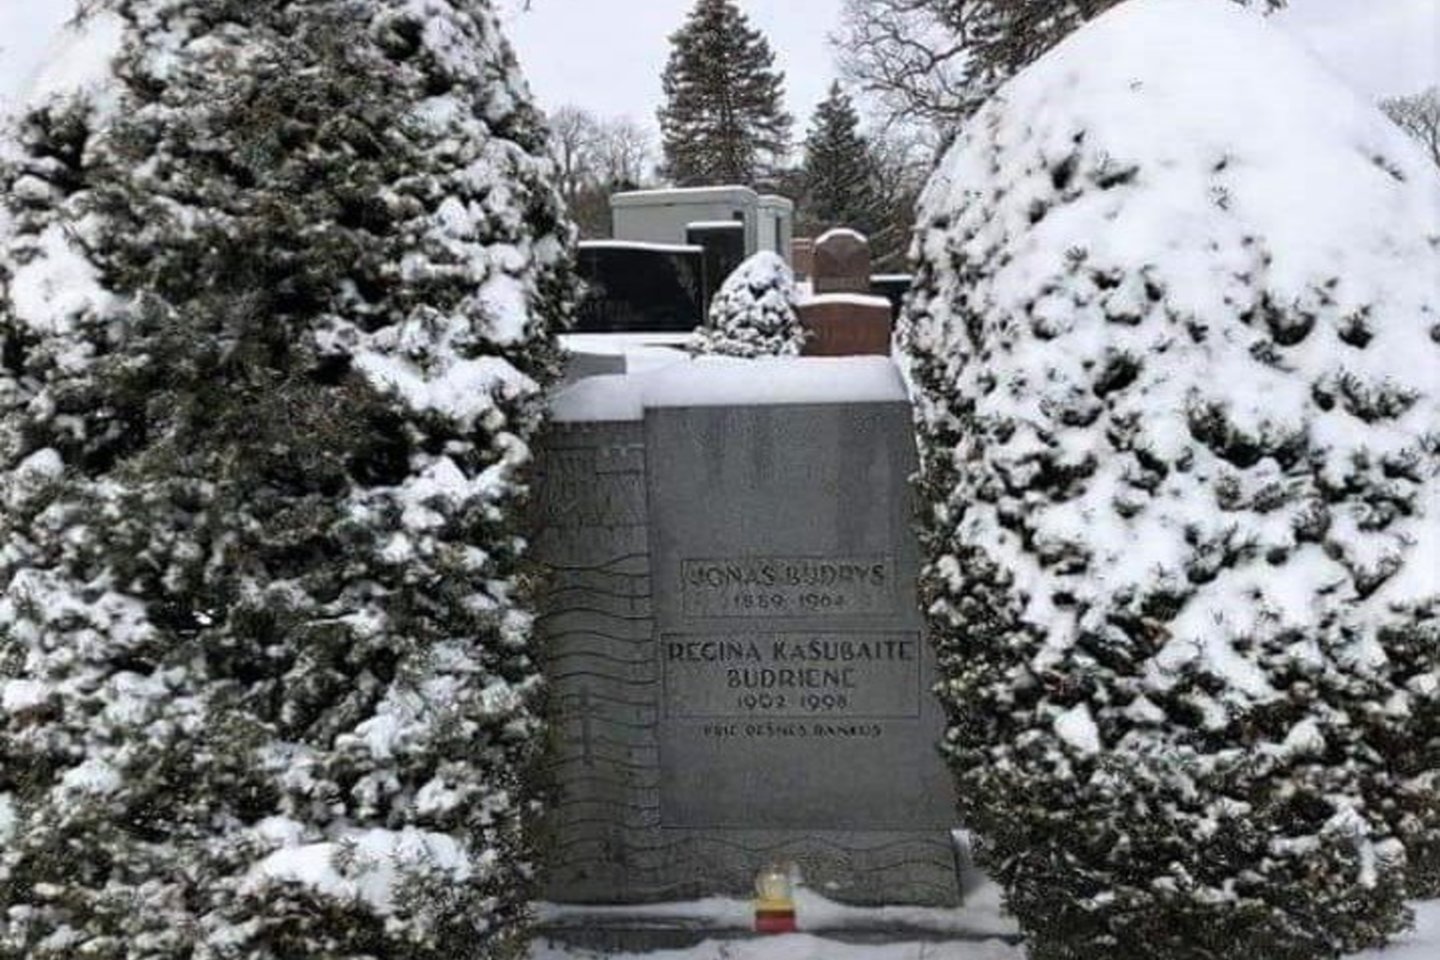  J.Budrio-Polovinsko ir jo žmonos kapas Čikagoje.<br>E.Lukoševičiaus nuotr. 